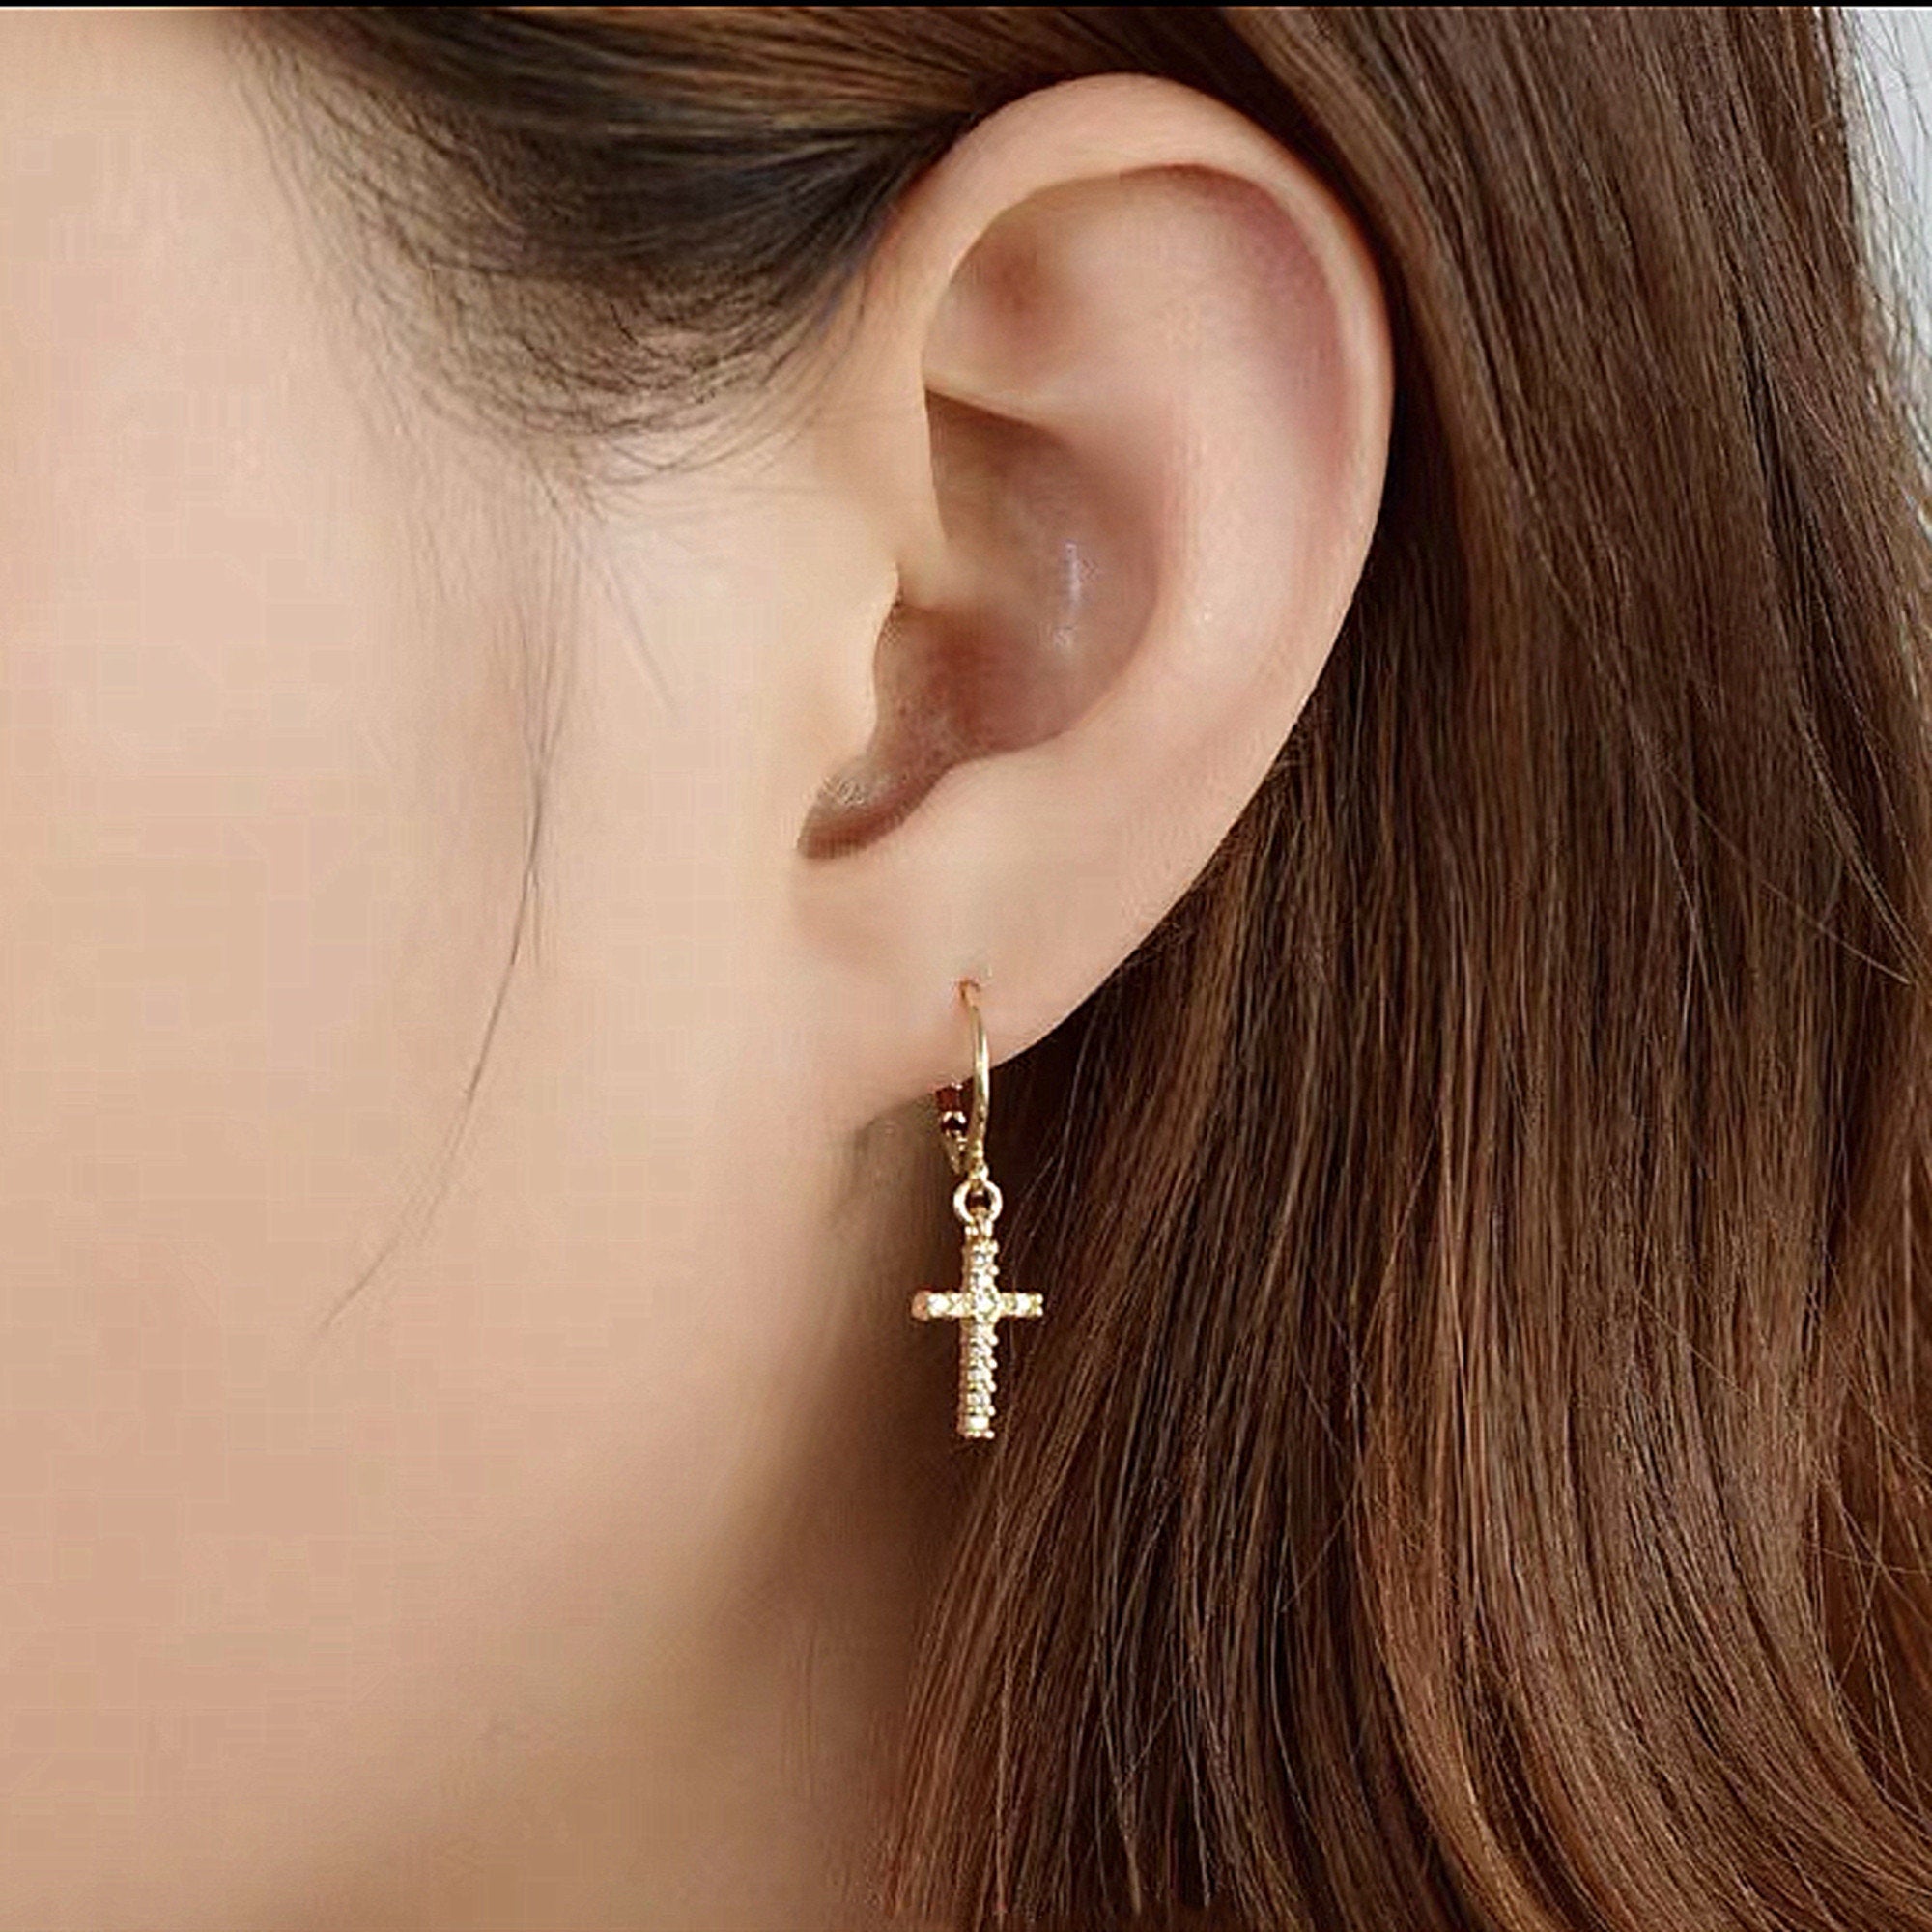 Boucles d'oreilles croix pendantes - Argent 925